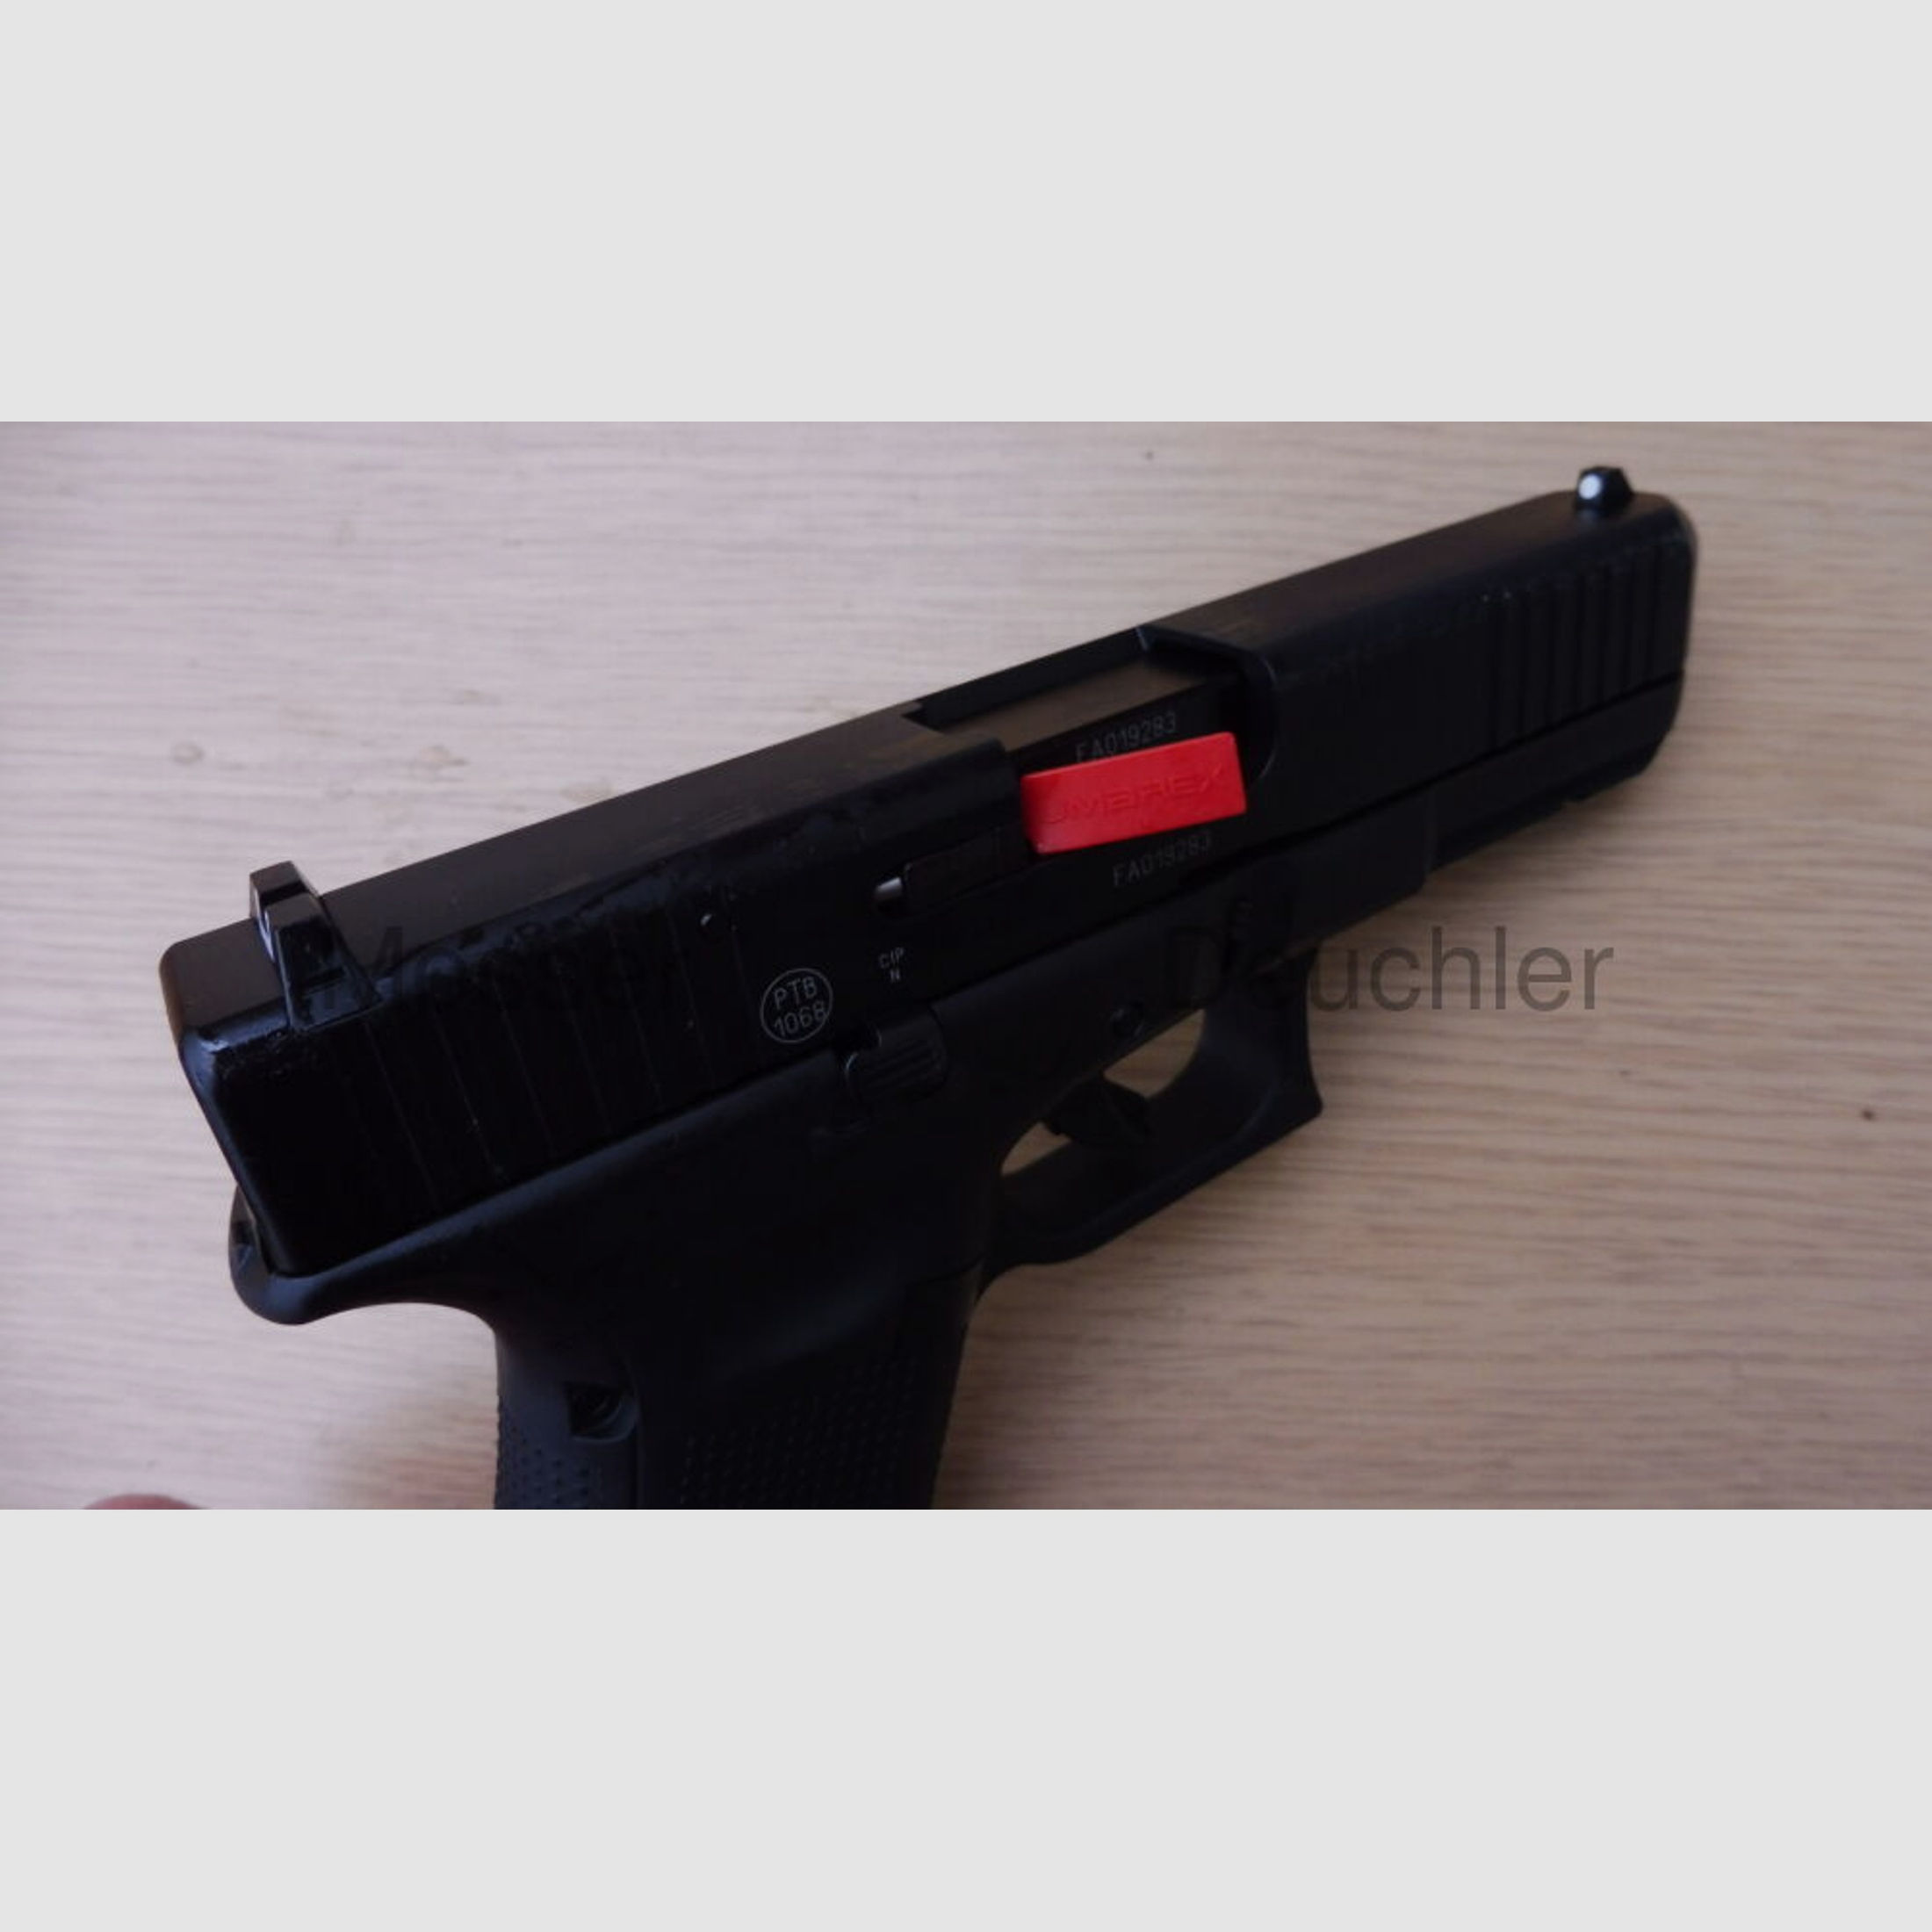 Umarex	 Glock 17 Gen5 Schreckschusswaffe  Black